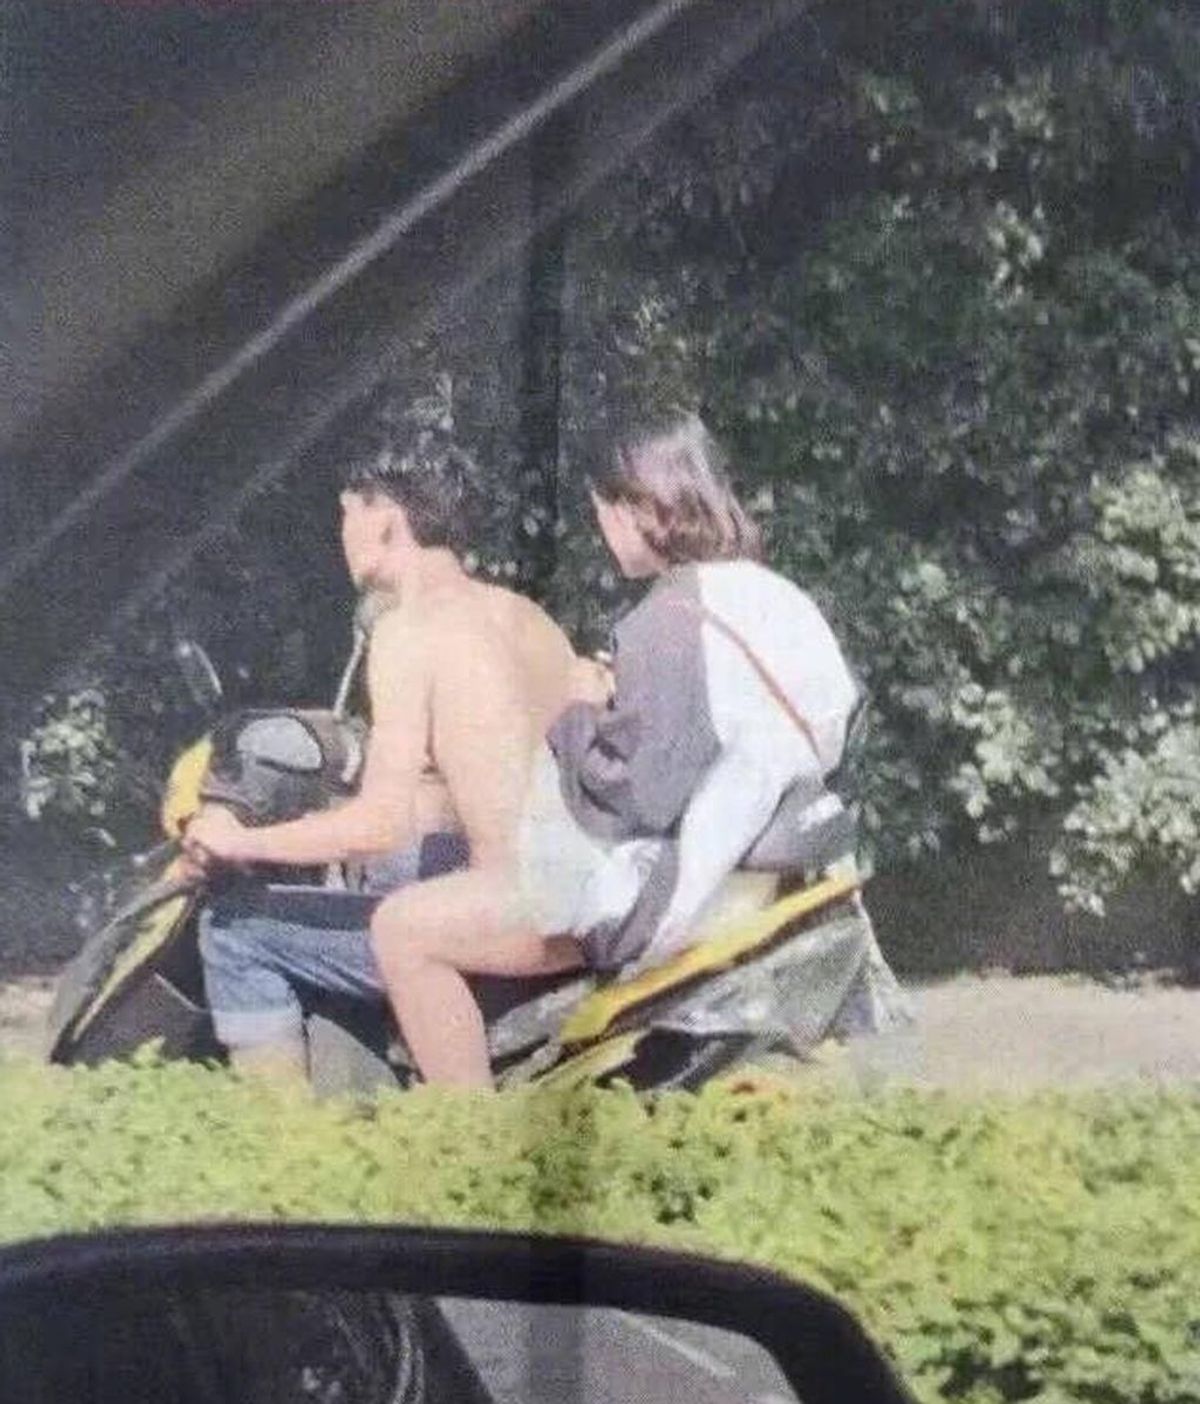 Estás viendo a un chico desnudo conduciendo una motocicleta… ¿Seguro?